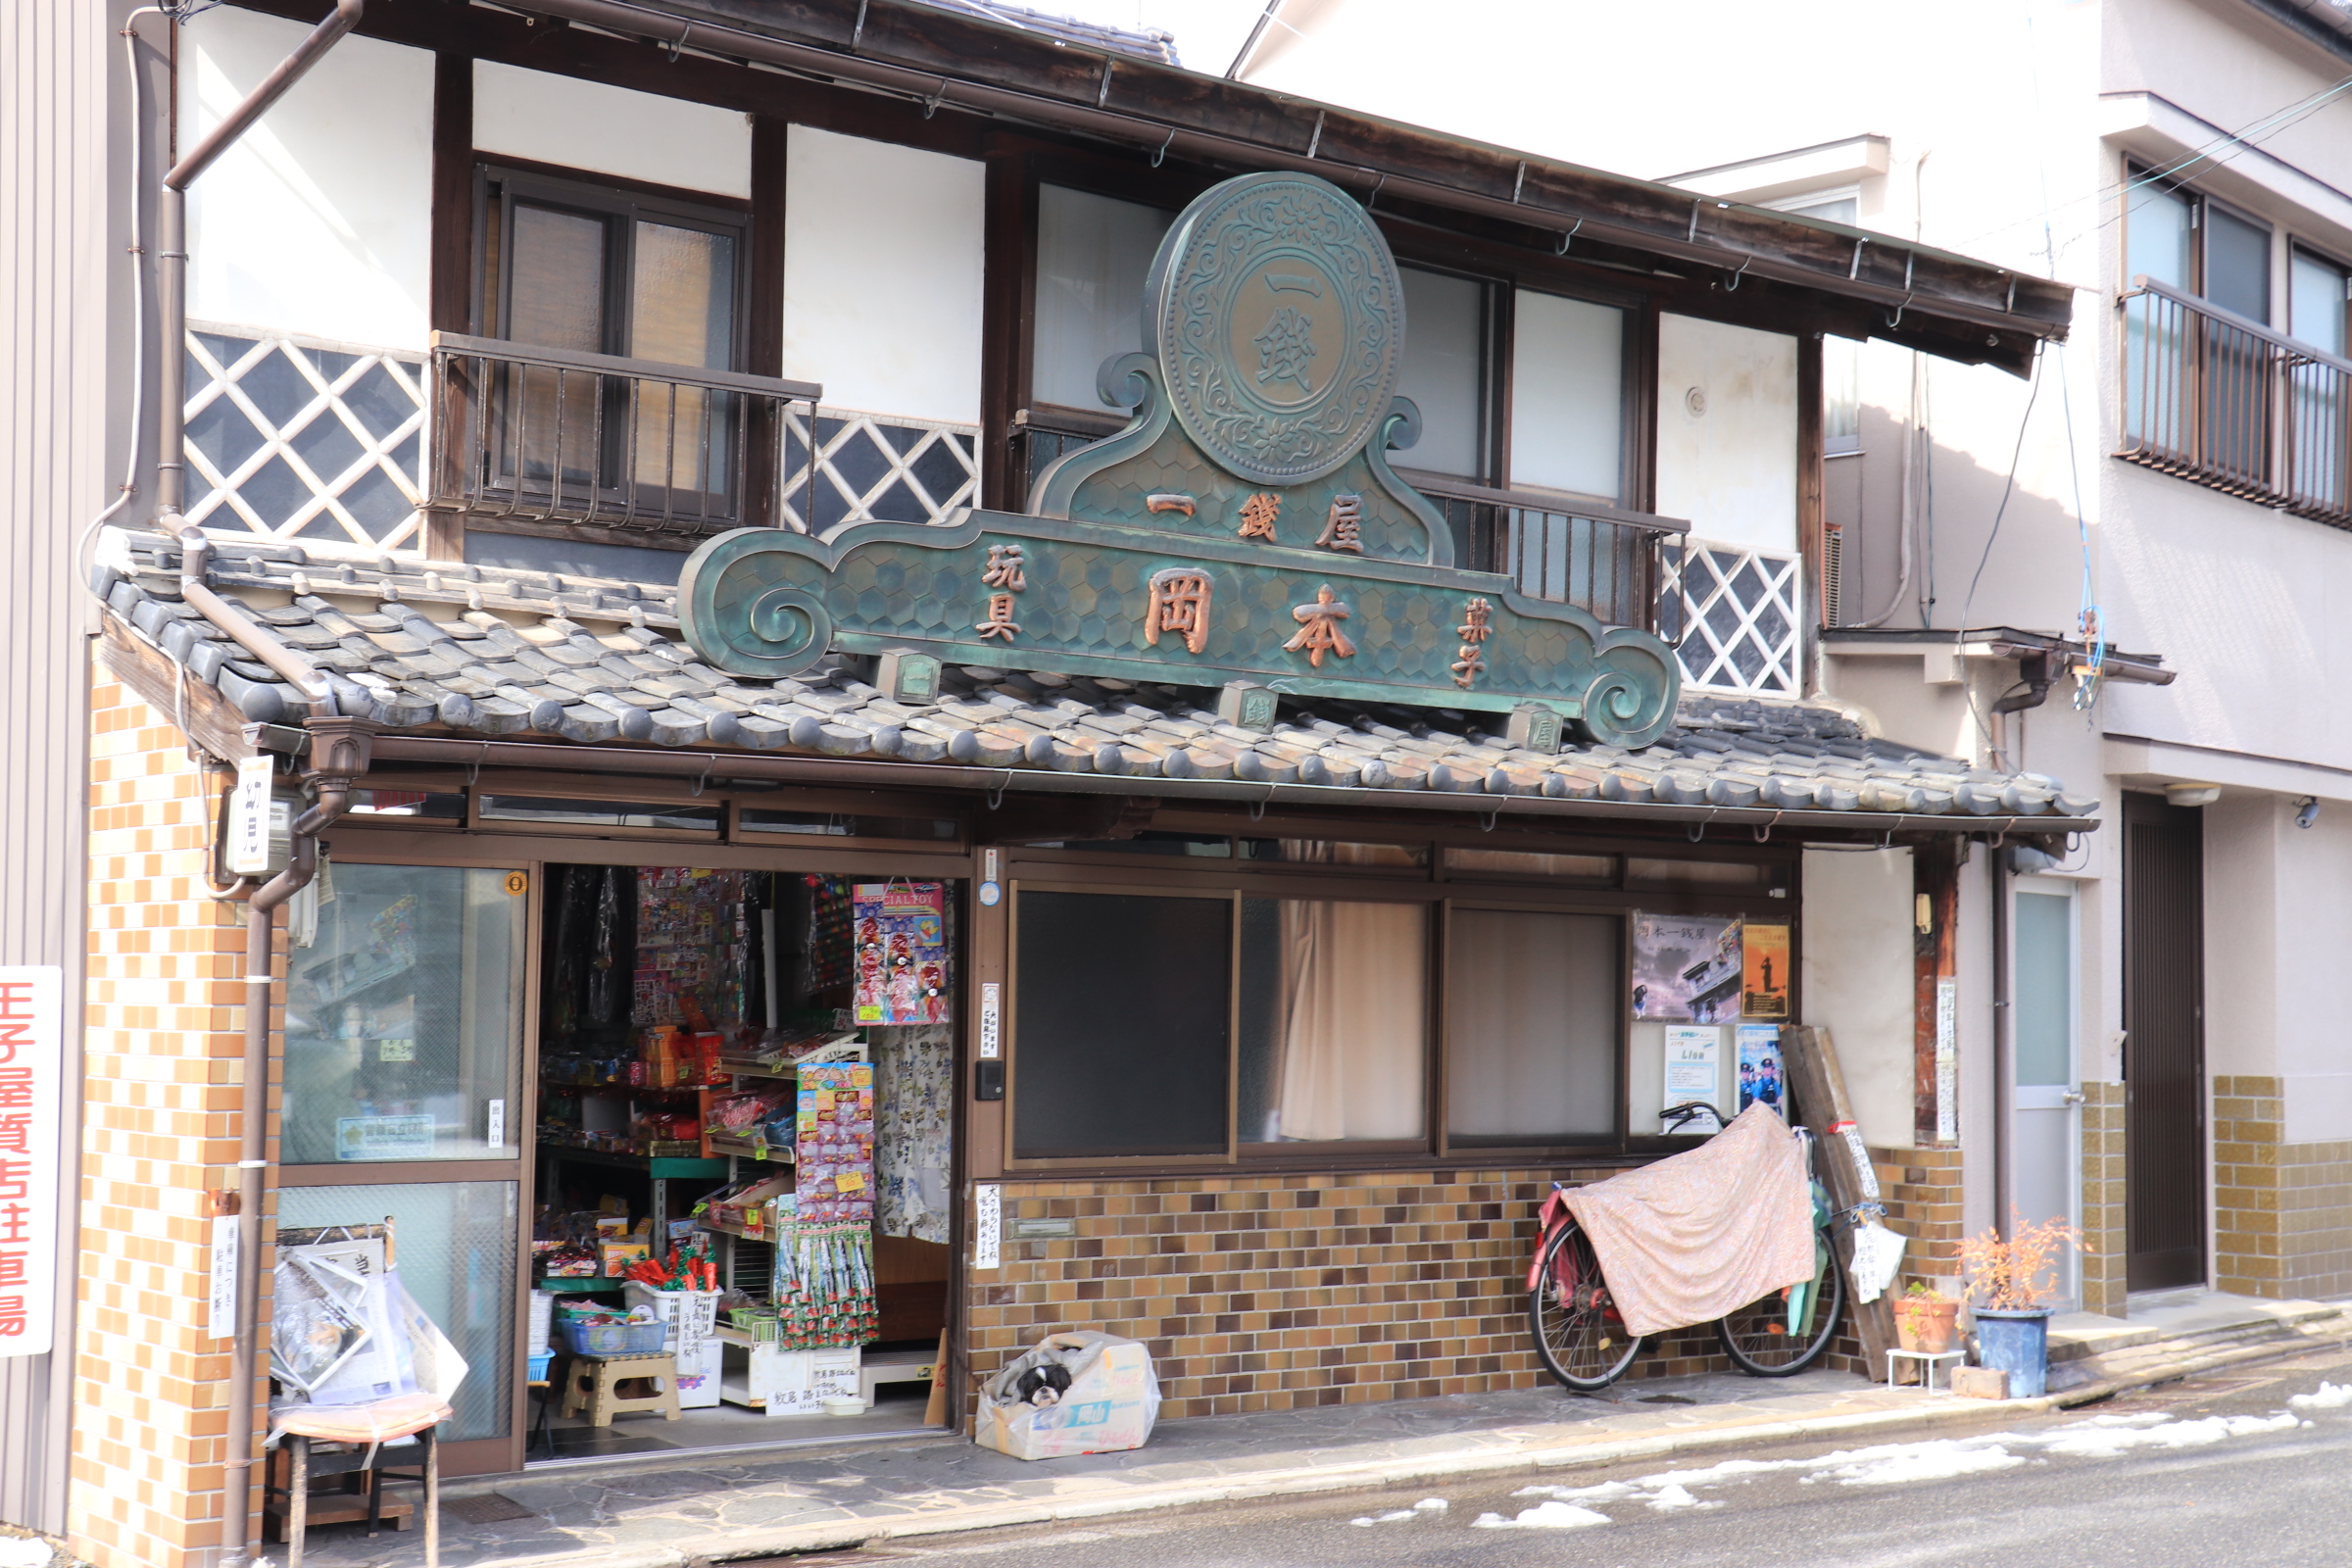 米子の岡本一銭屋は、明治から続く駄菓子屋さん。 